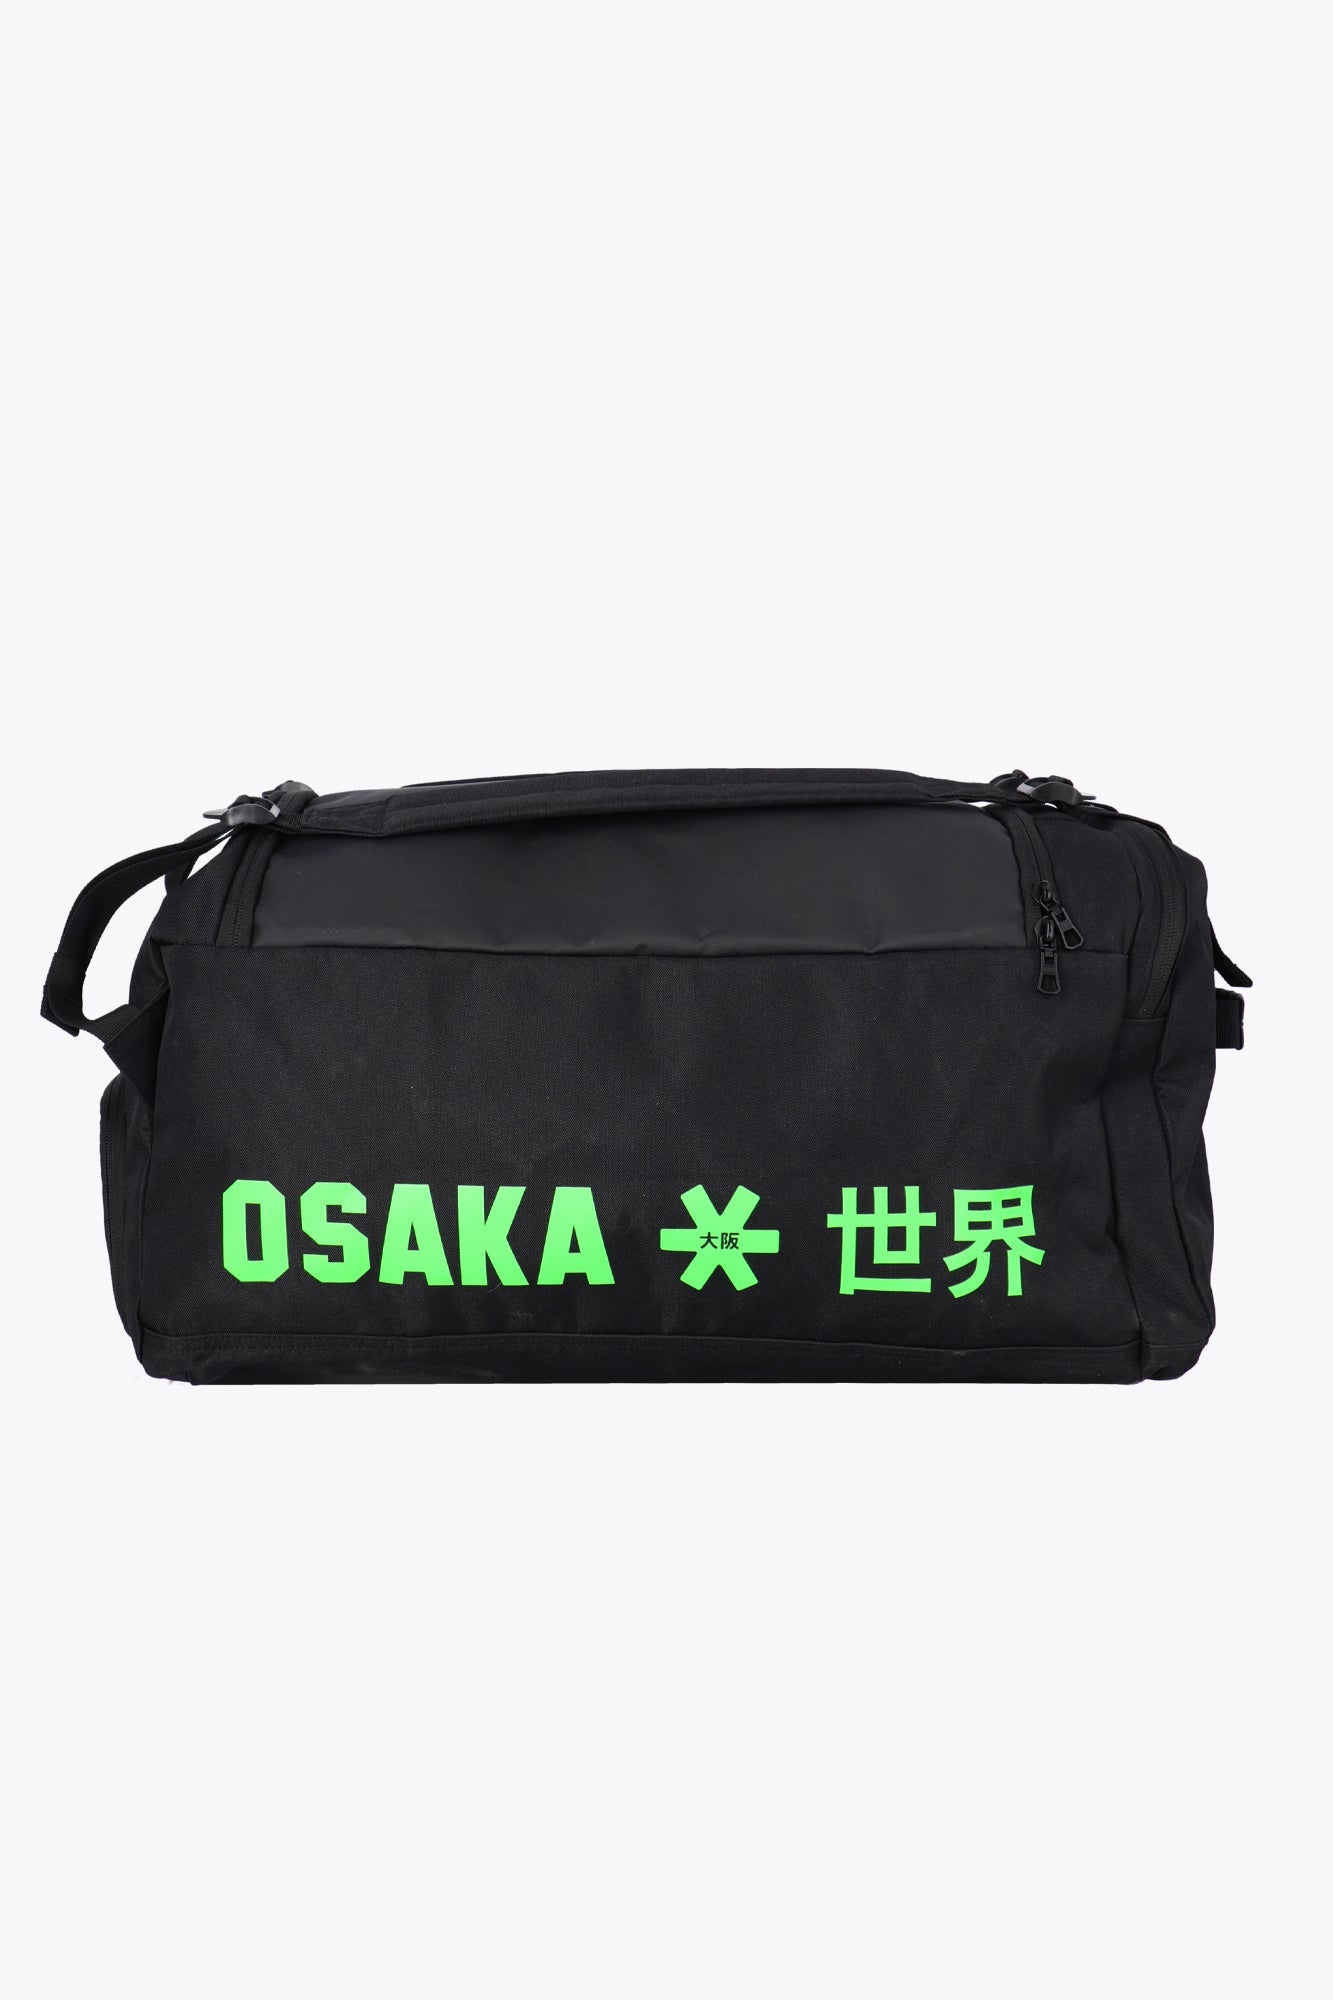 Osaka Sports Duffle Bag (sort/grøn)